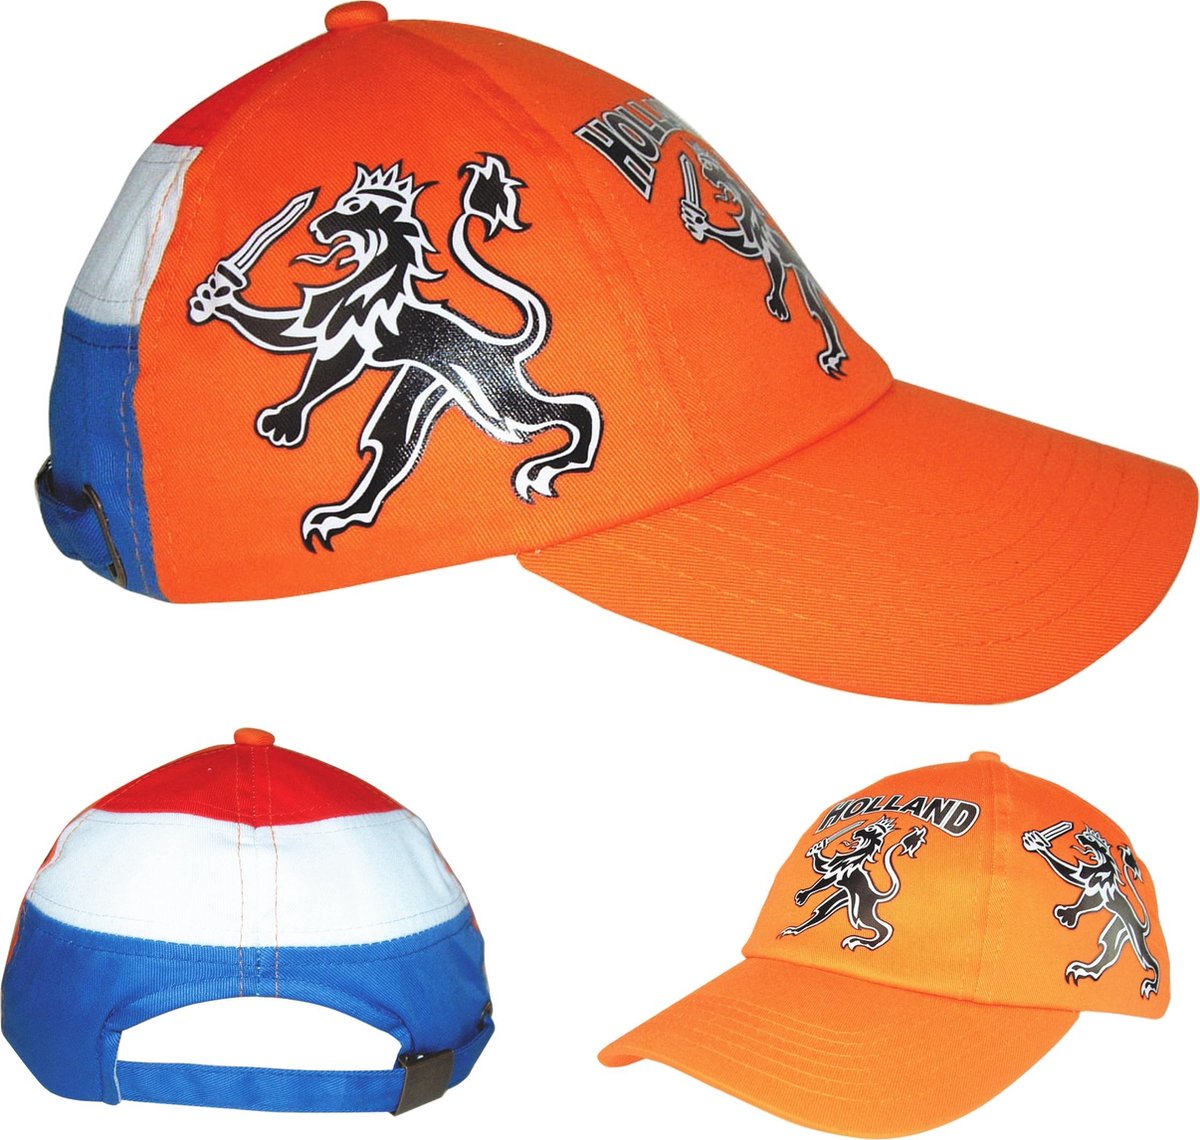 Holland Luxe Kinder Sandwich Cap - 6 panel oranje baseball cap met de Nederlandse leeuw erop gedrukt. baseballcap